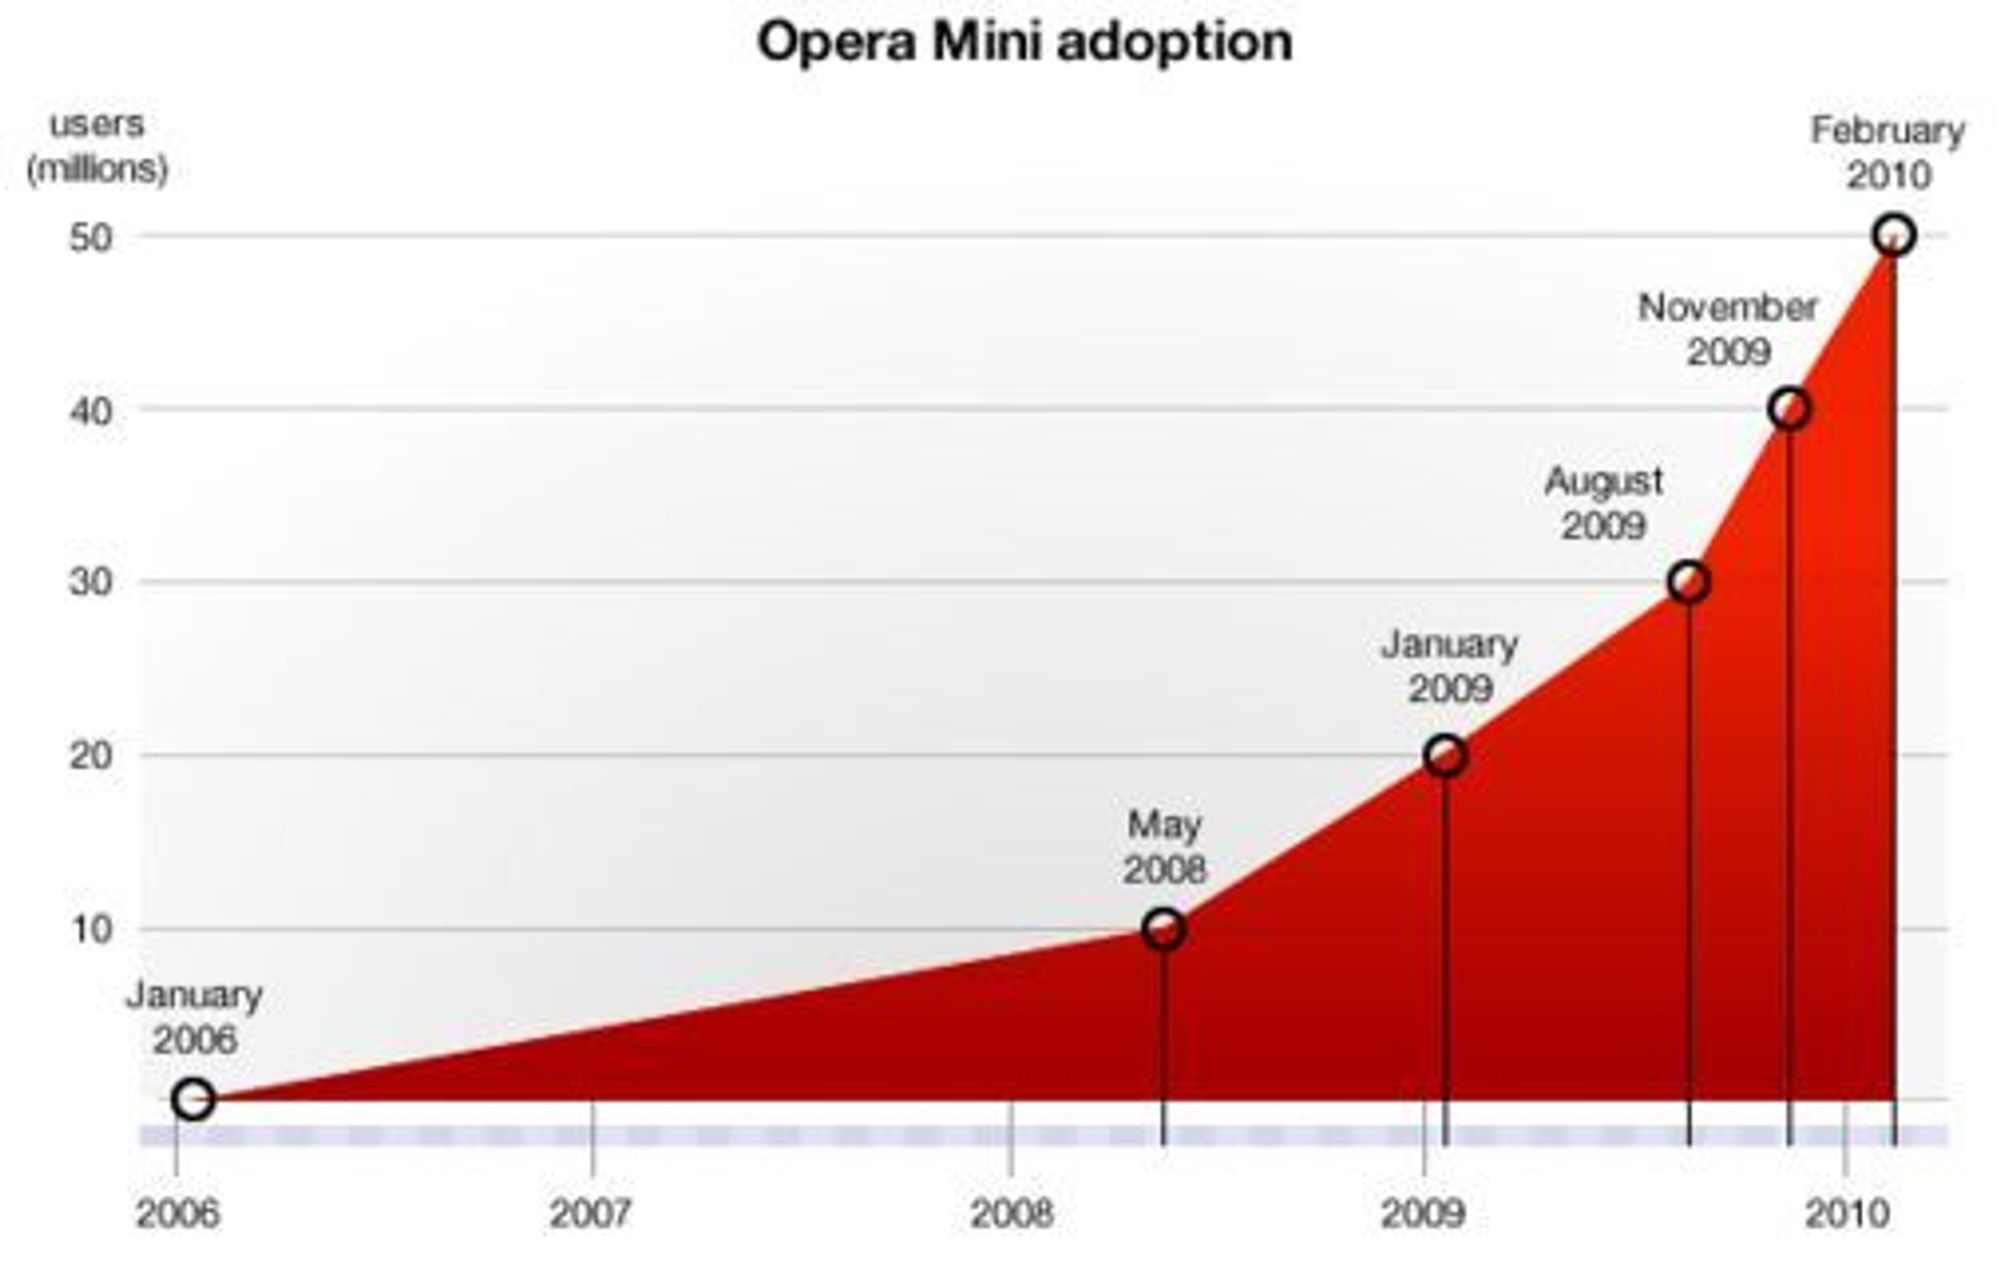 Veksten til Opera Mini målt i månedlige brukere siden lanseringen i januar 2006.